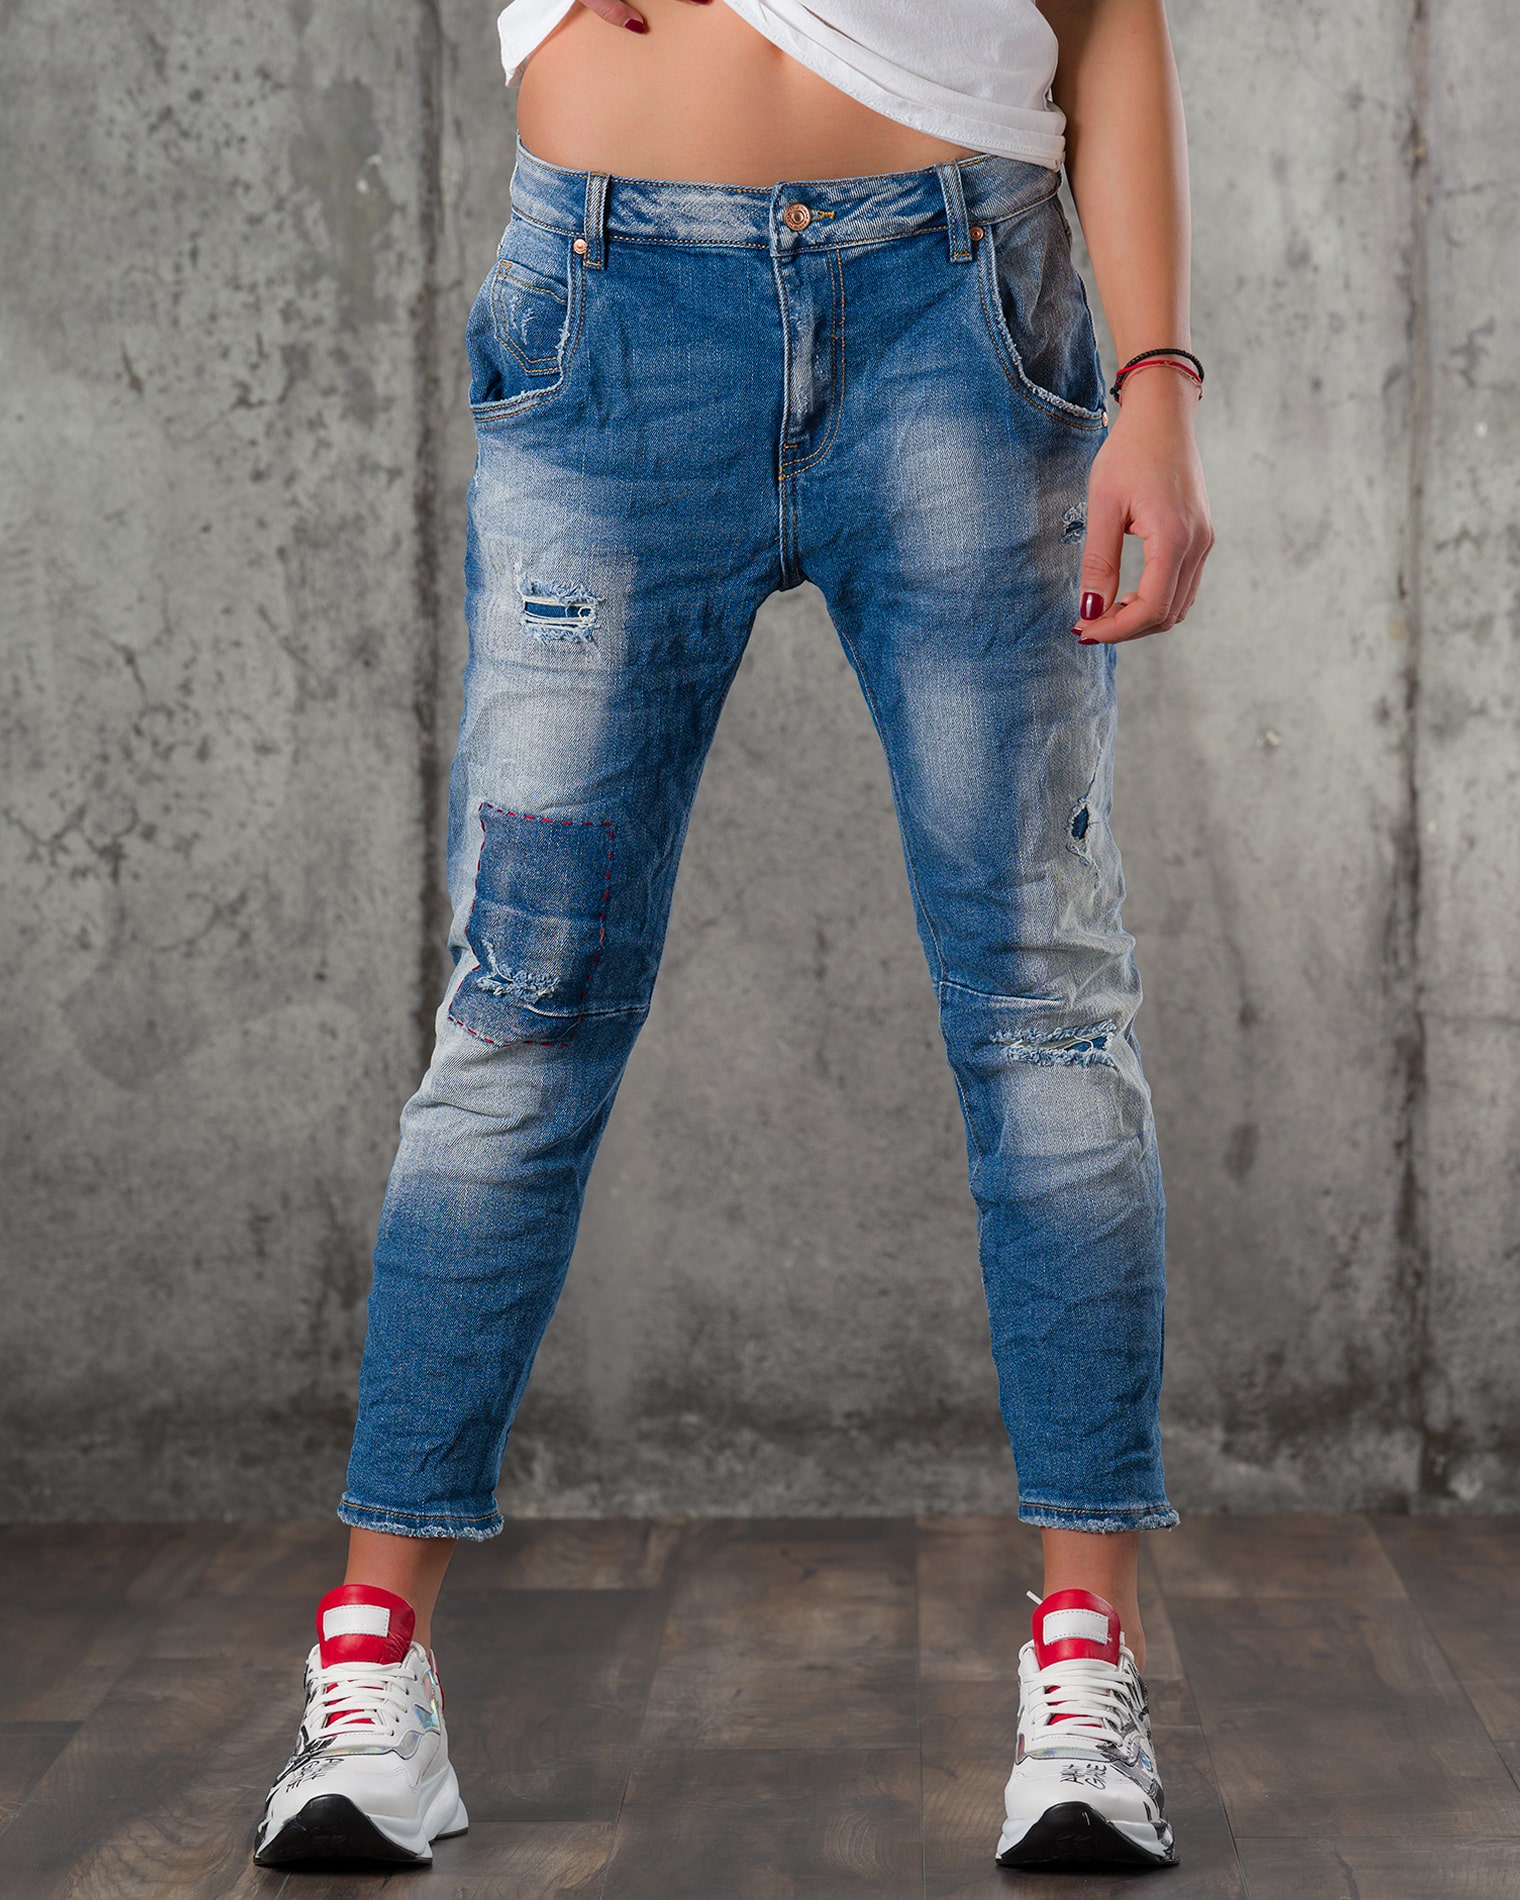 Standоut Jeans, Blue Color